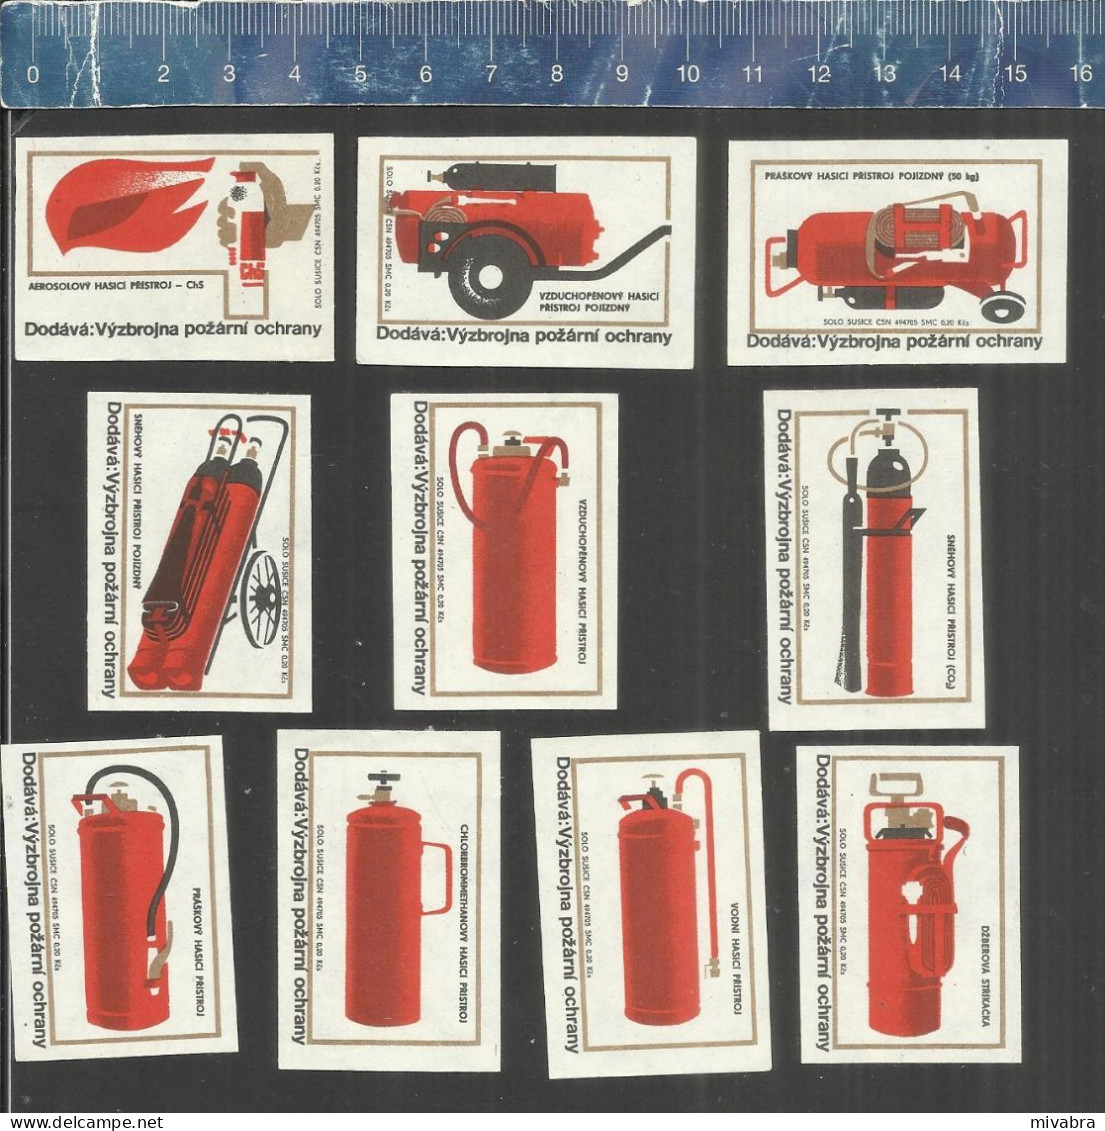 FIRE PREVENTION BRANDSCHUTZ PROTECTION CONTRE L'INCENDIE FIRE EXTINGUISHERS - MATCHBOX LABELS CZECHOSLOVAKIA 1971 - Boites D'allumettes - Etiquettes